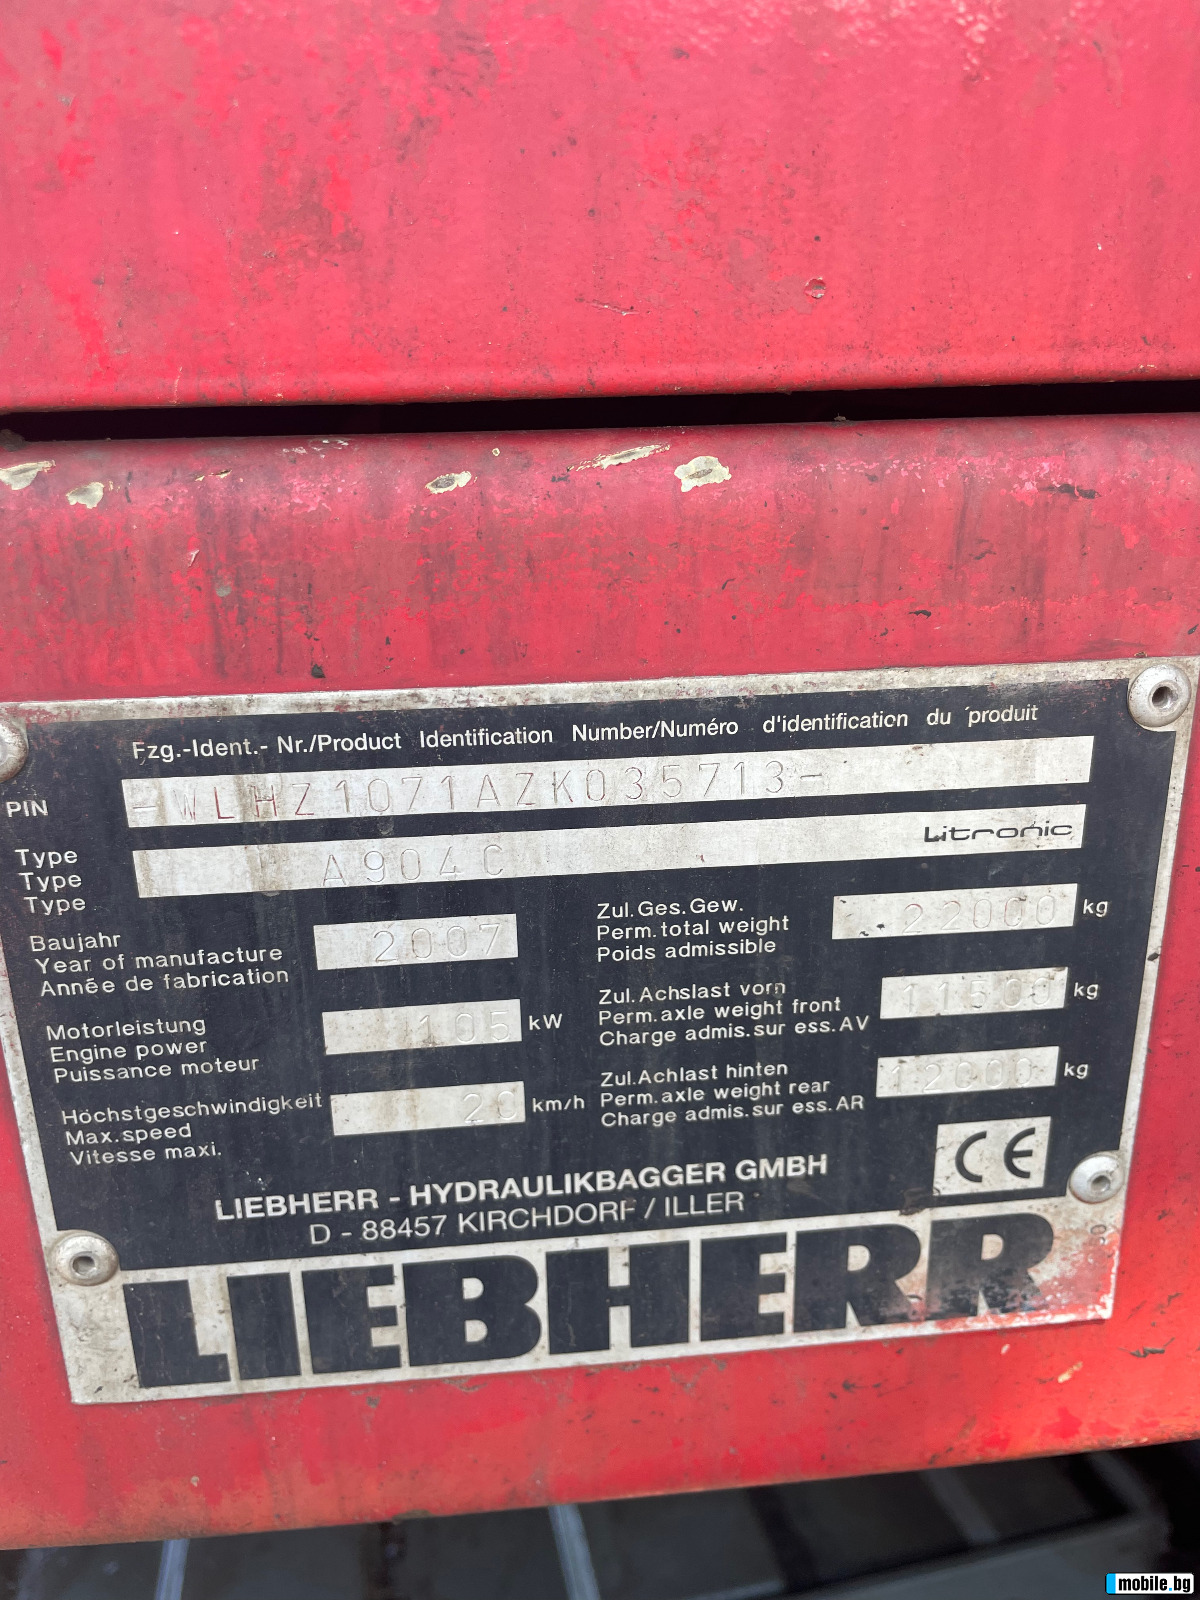  Liebherr 904 | Mobile.bg   11